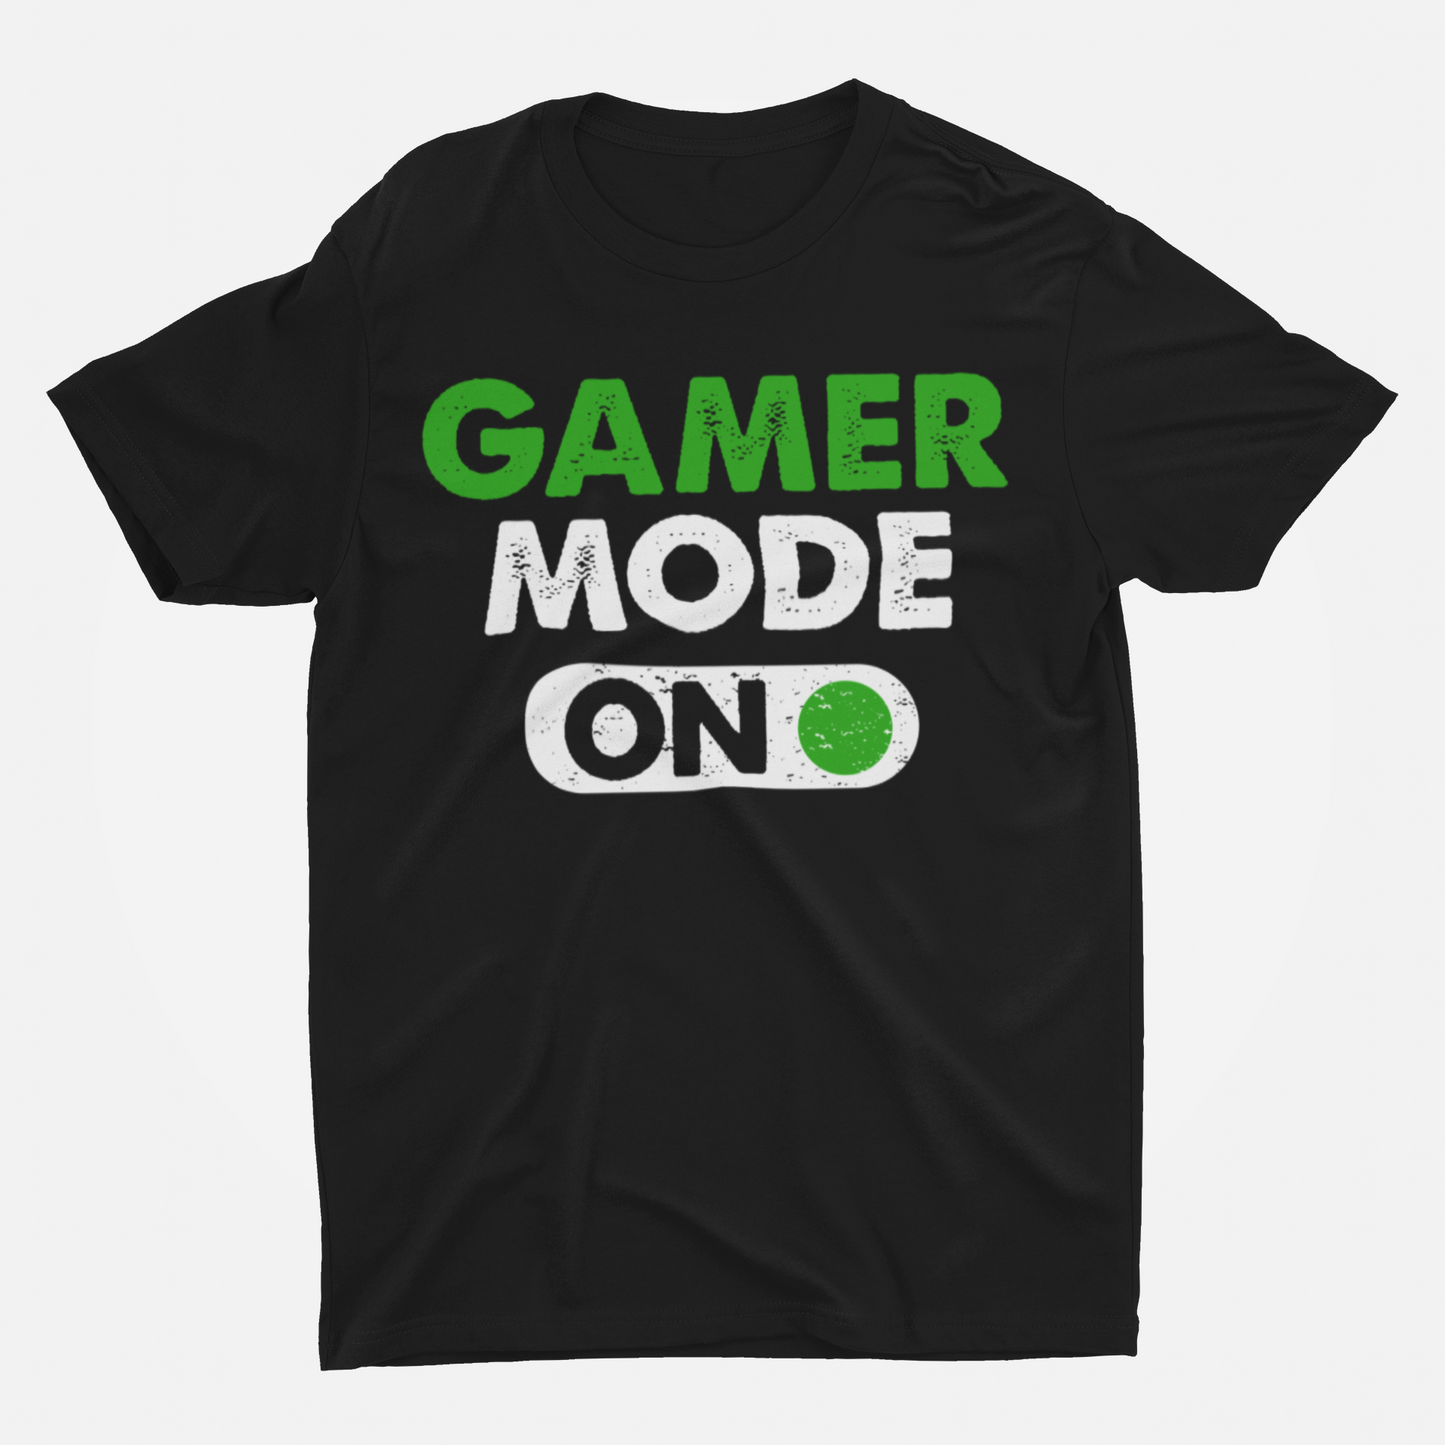 Gamer Mode On Black Round Neck T-Shirt for Men